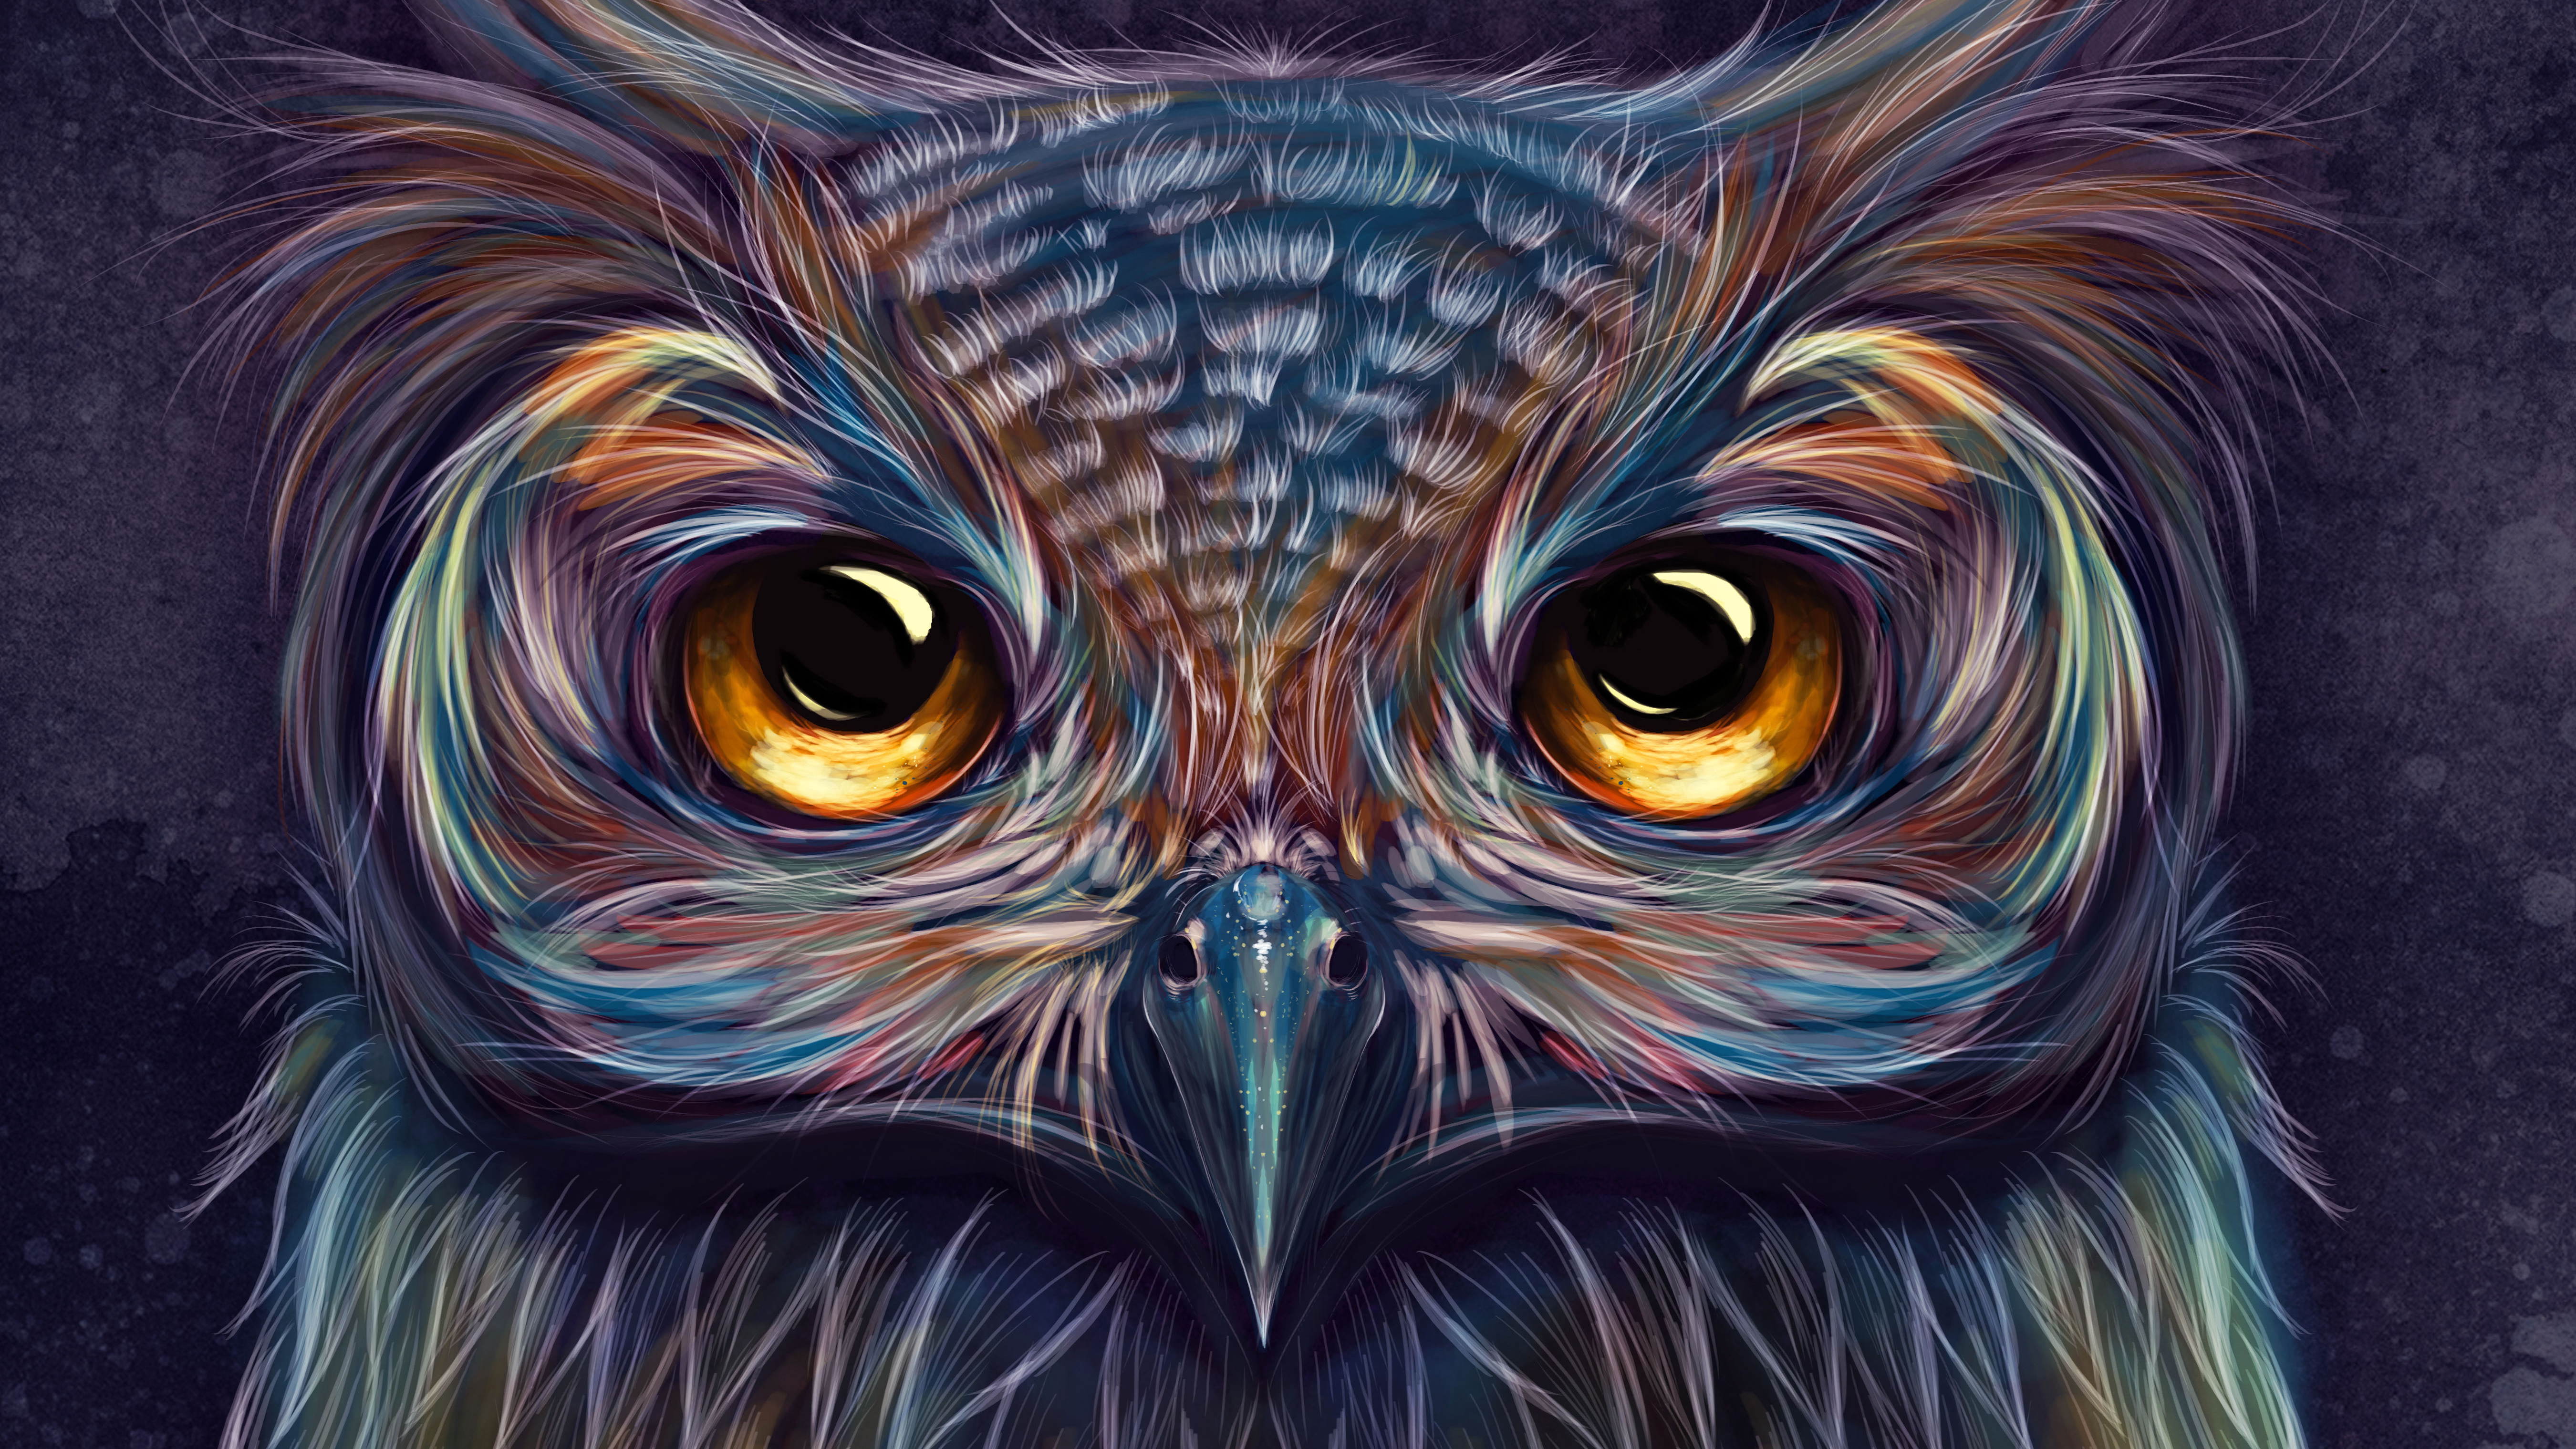 owl art wallpaper,bird,owl,bird of prey,golden eagle,eagle